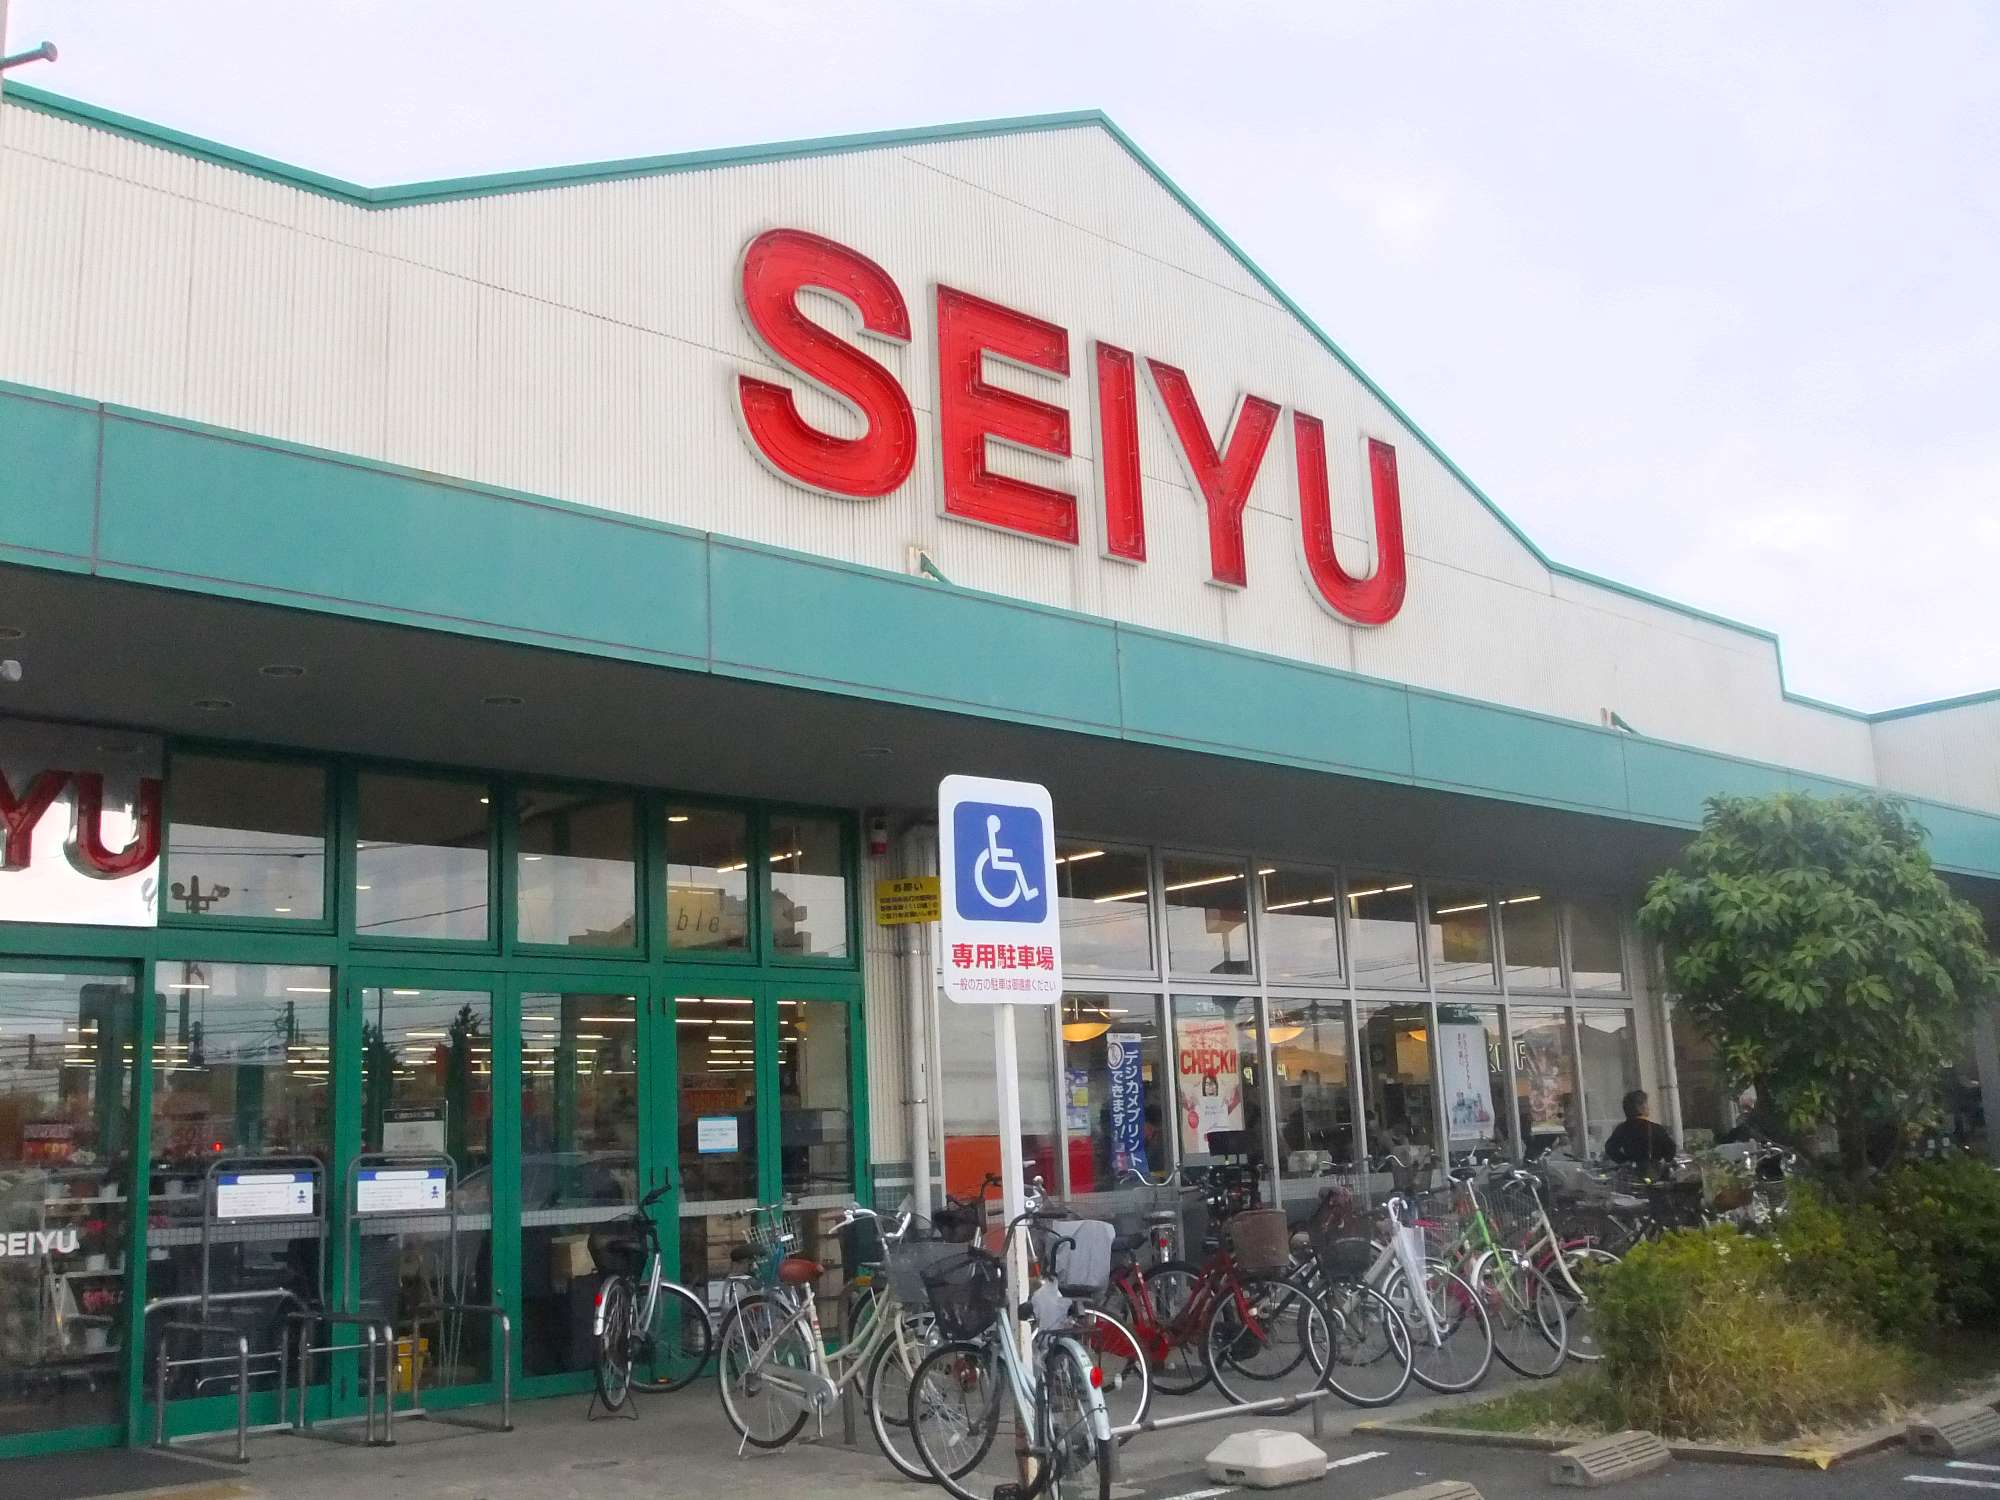 Supermarket. 1214m to Seiyu Tokorozawa Garden store (Super)